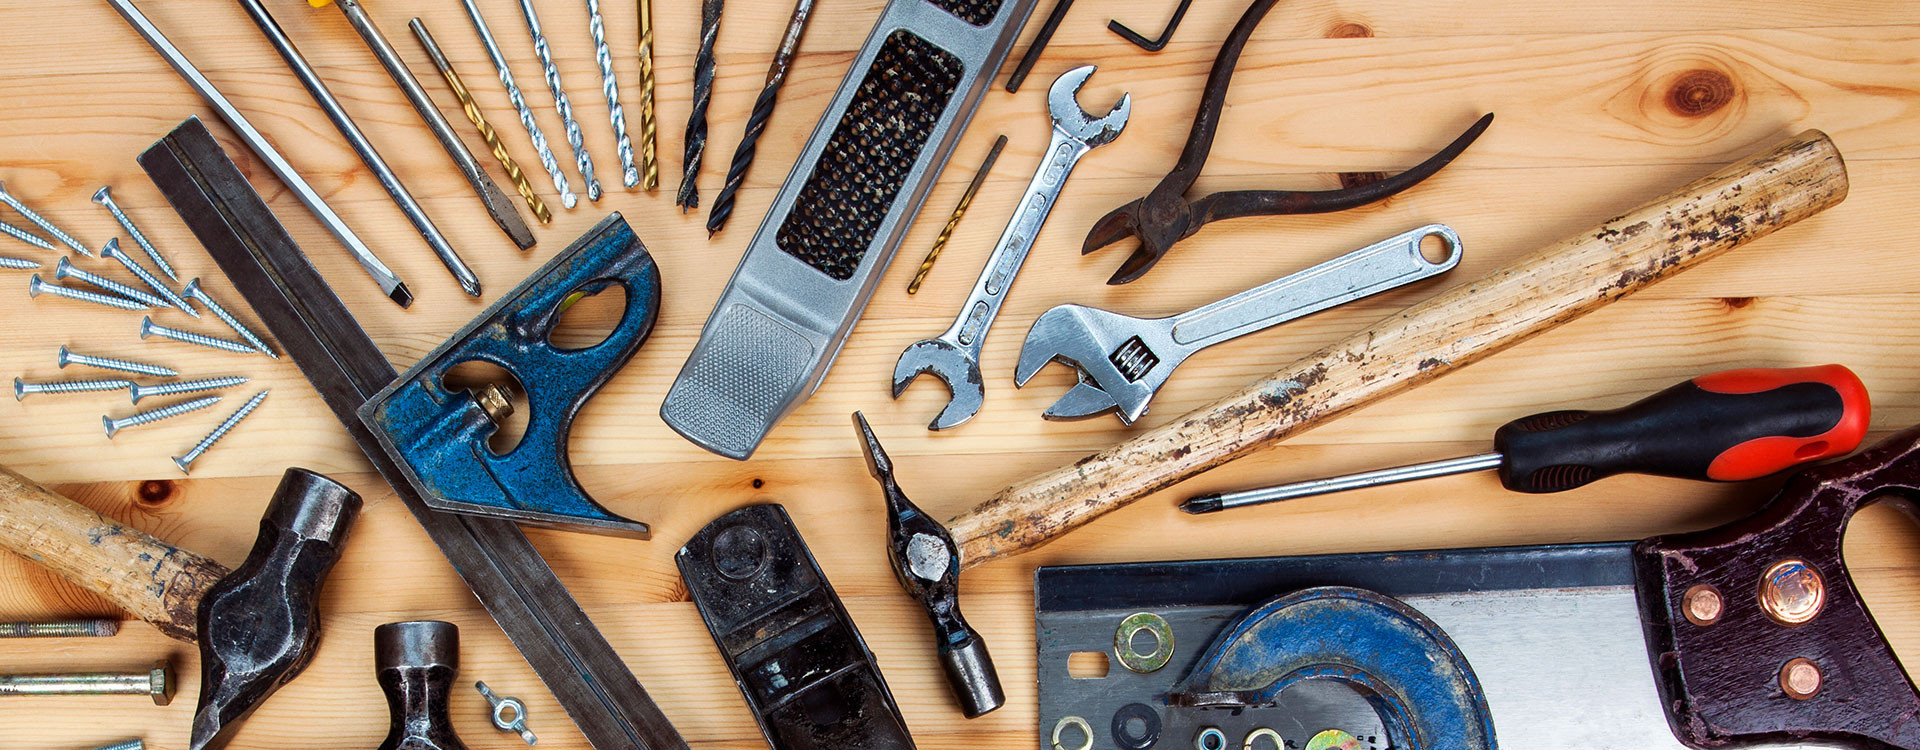 Qué debe contener una caja de herramientas? ✓ Blog ORION91